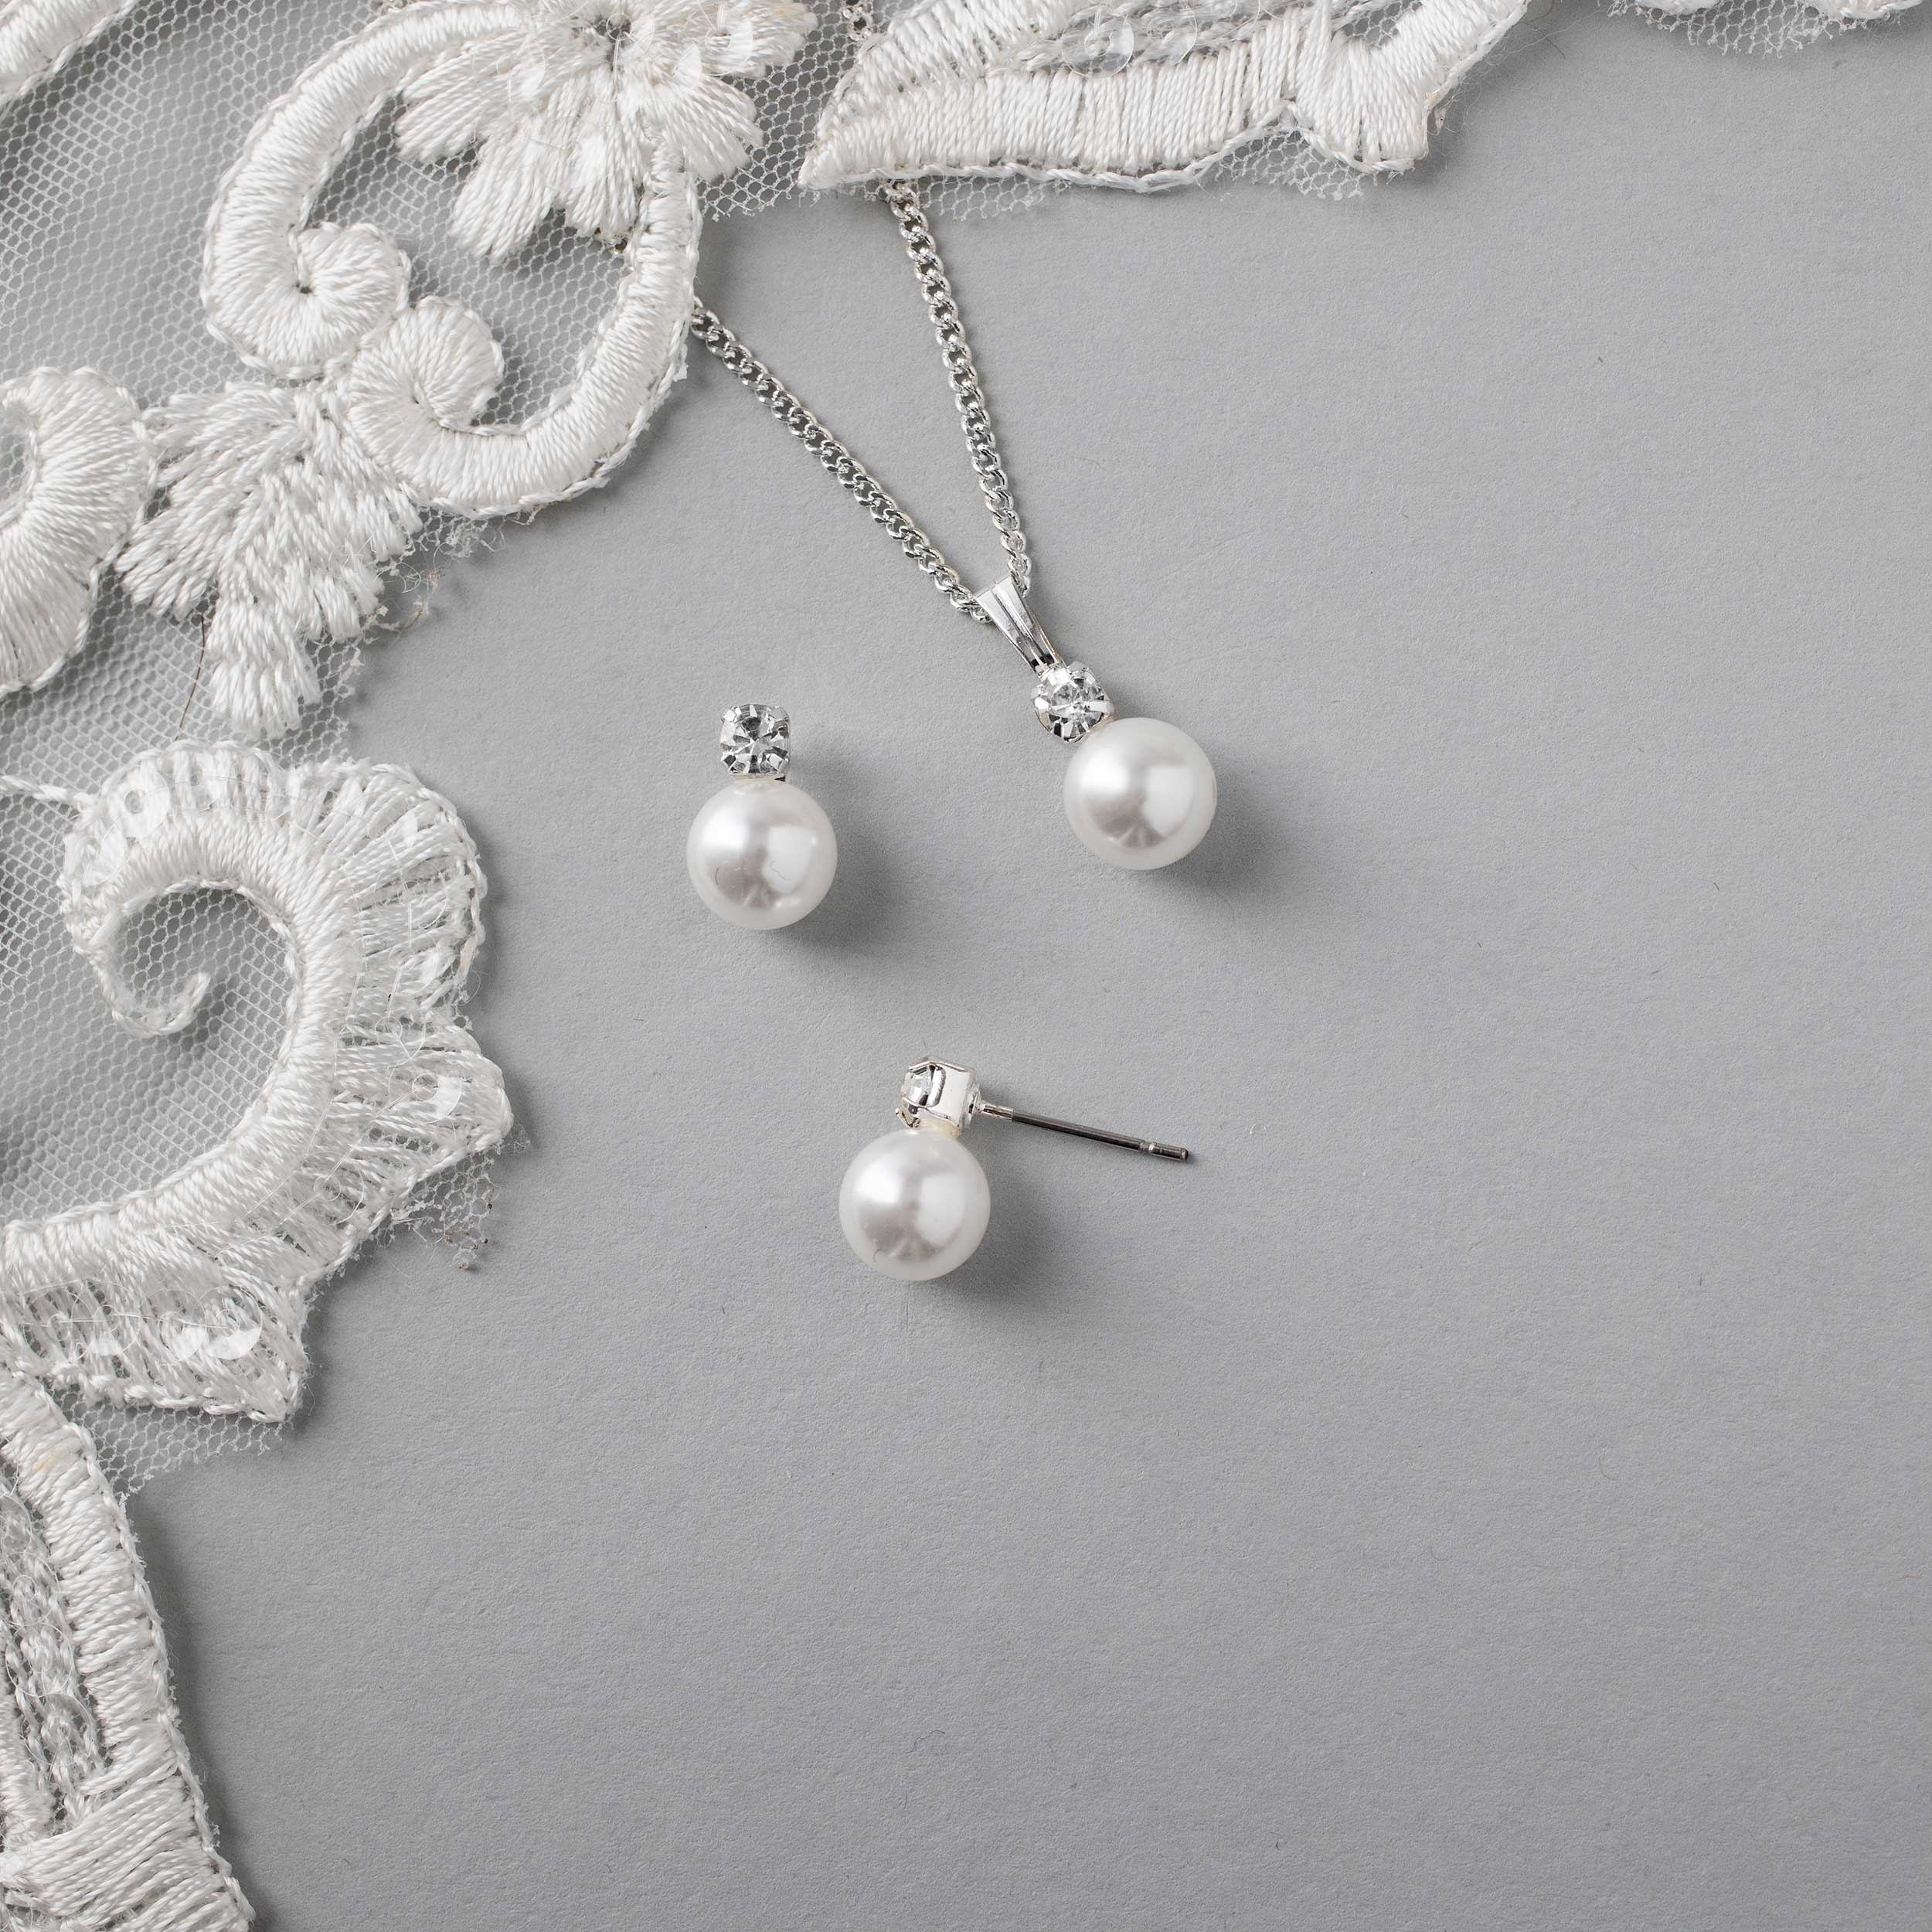 Buy Beautiful White Stone Necklace Set for Wedding